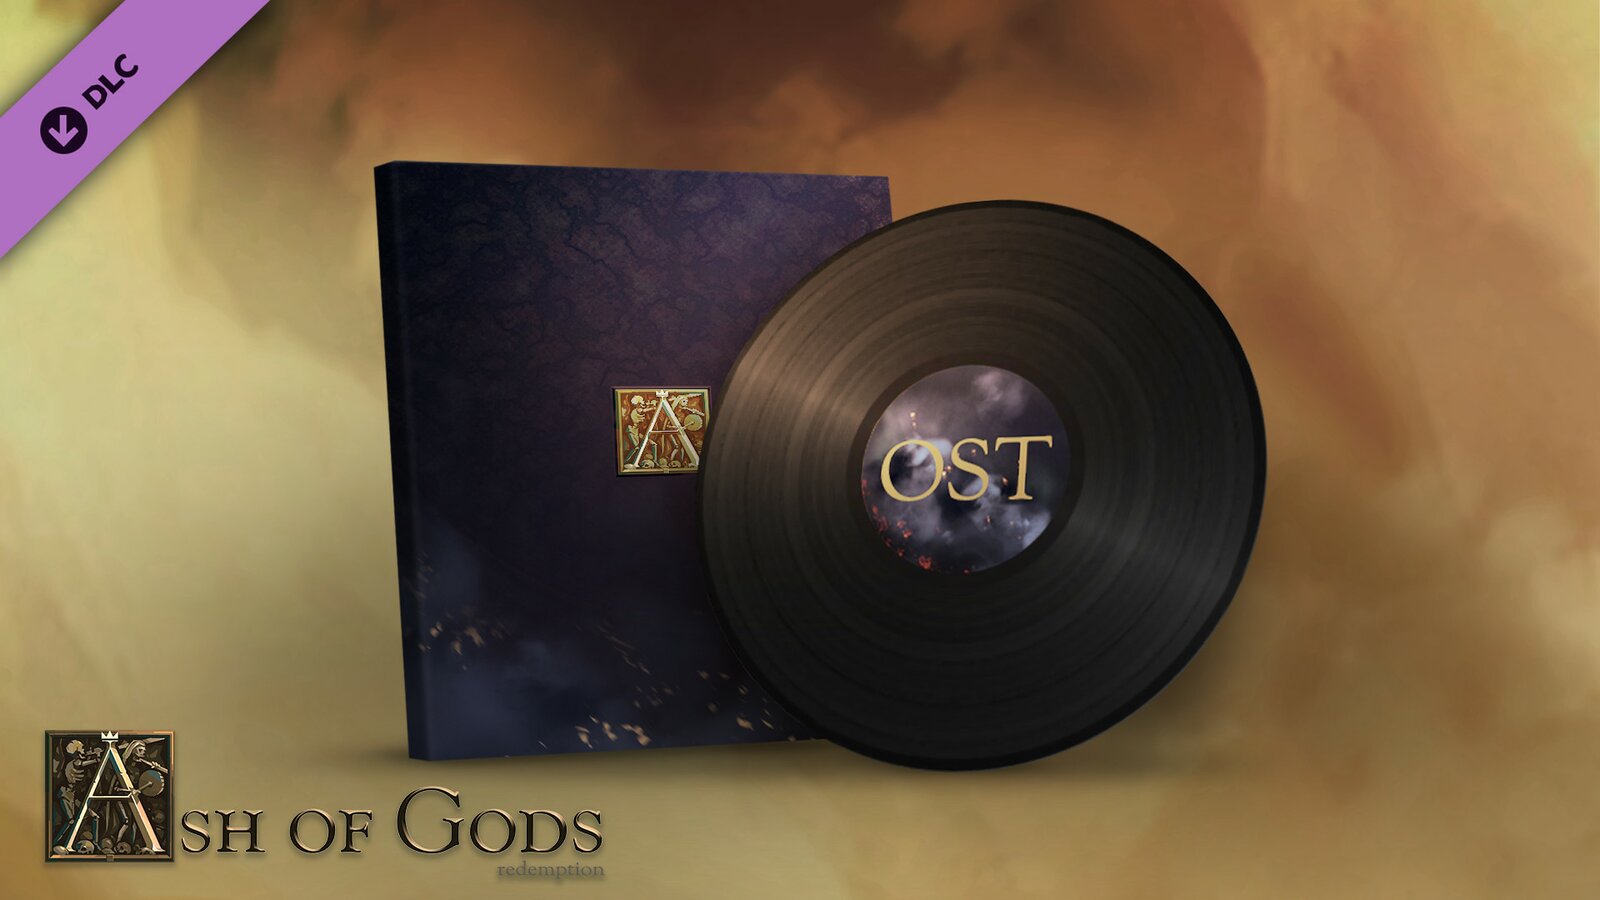 Ash of Gods: Redemption - Original Soundtrack